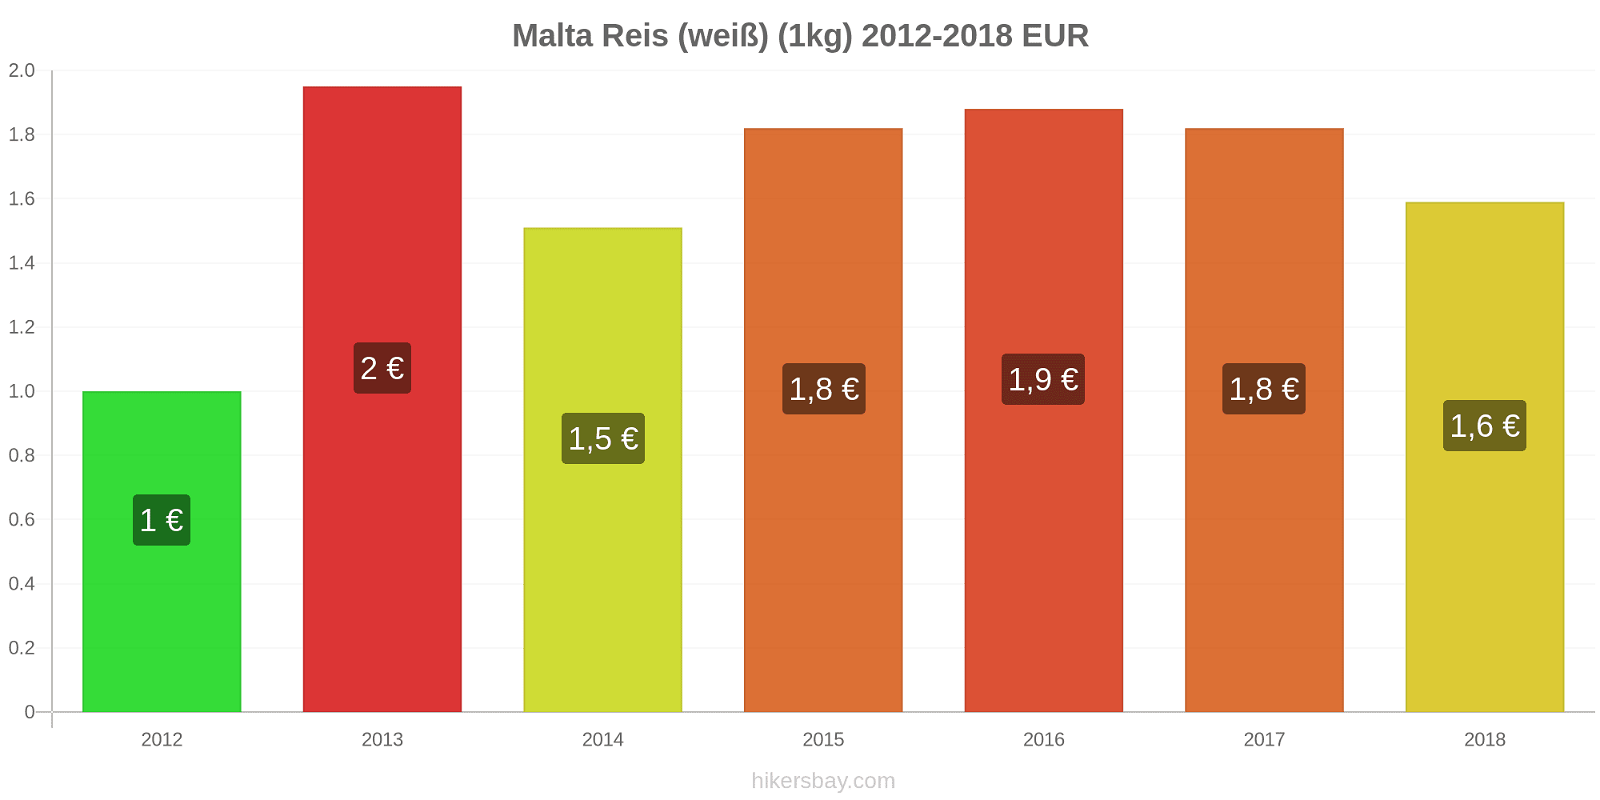 Malta Preisänderungen Reis (weiß) (1kg) hikersbay.com